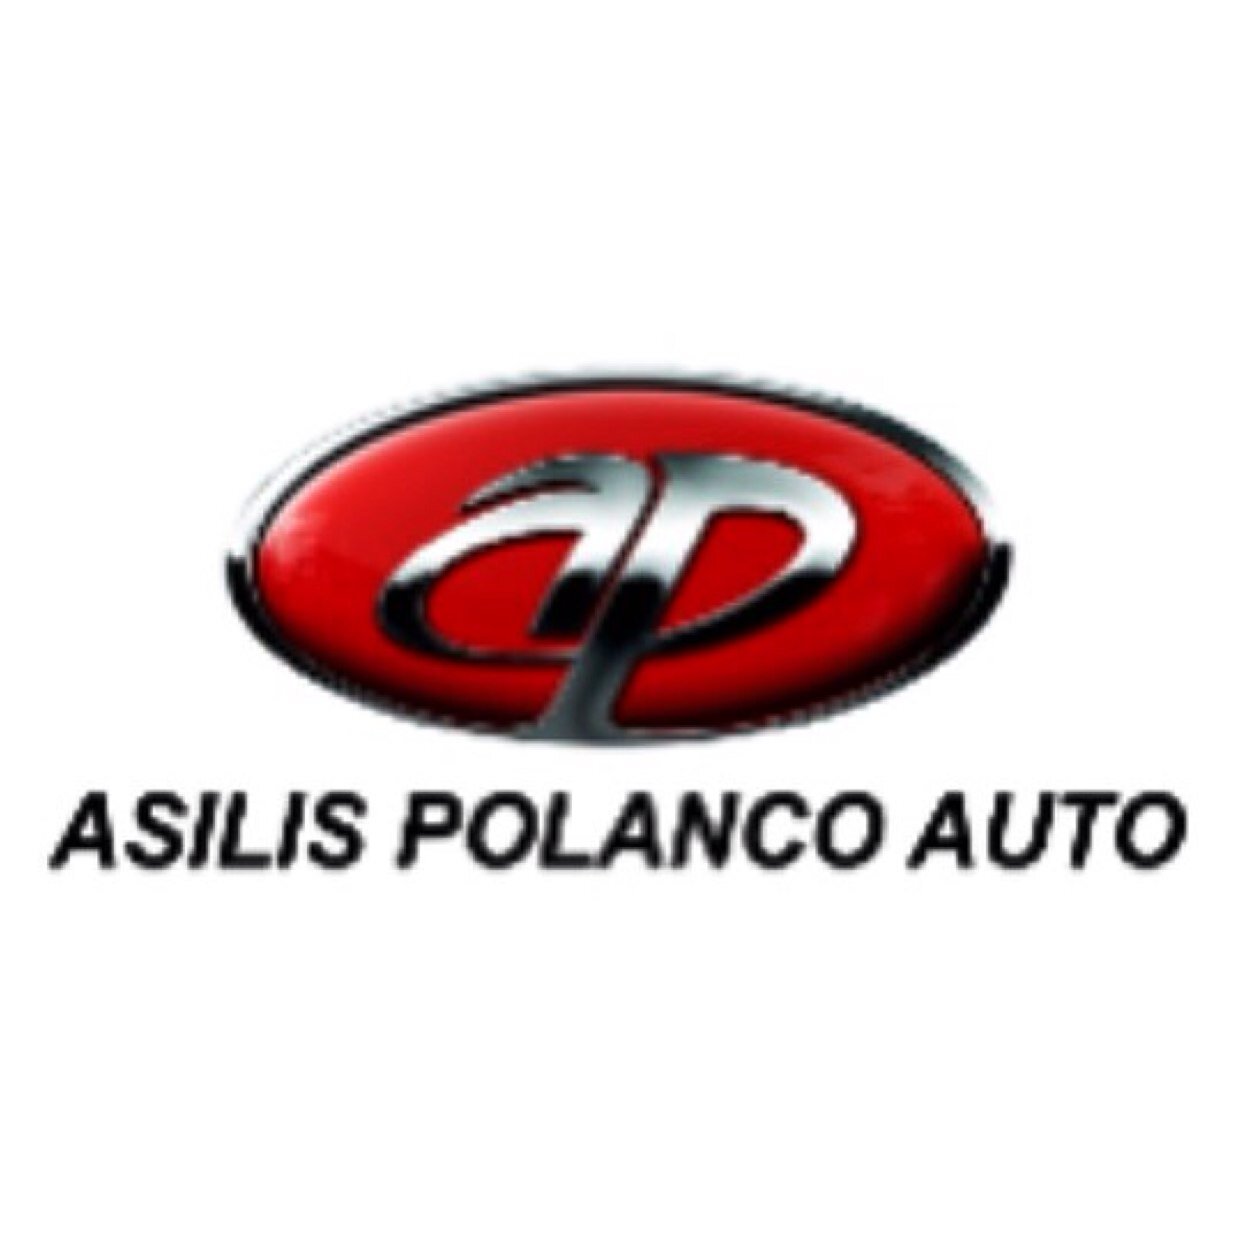 Agencia de Vehiculos Nuevos y Usados, todas las marcas. En Moca Tel: (809)-578-7393 y (809) 578-7103               En Instagram: @asilispolancoauto